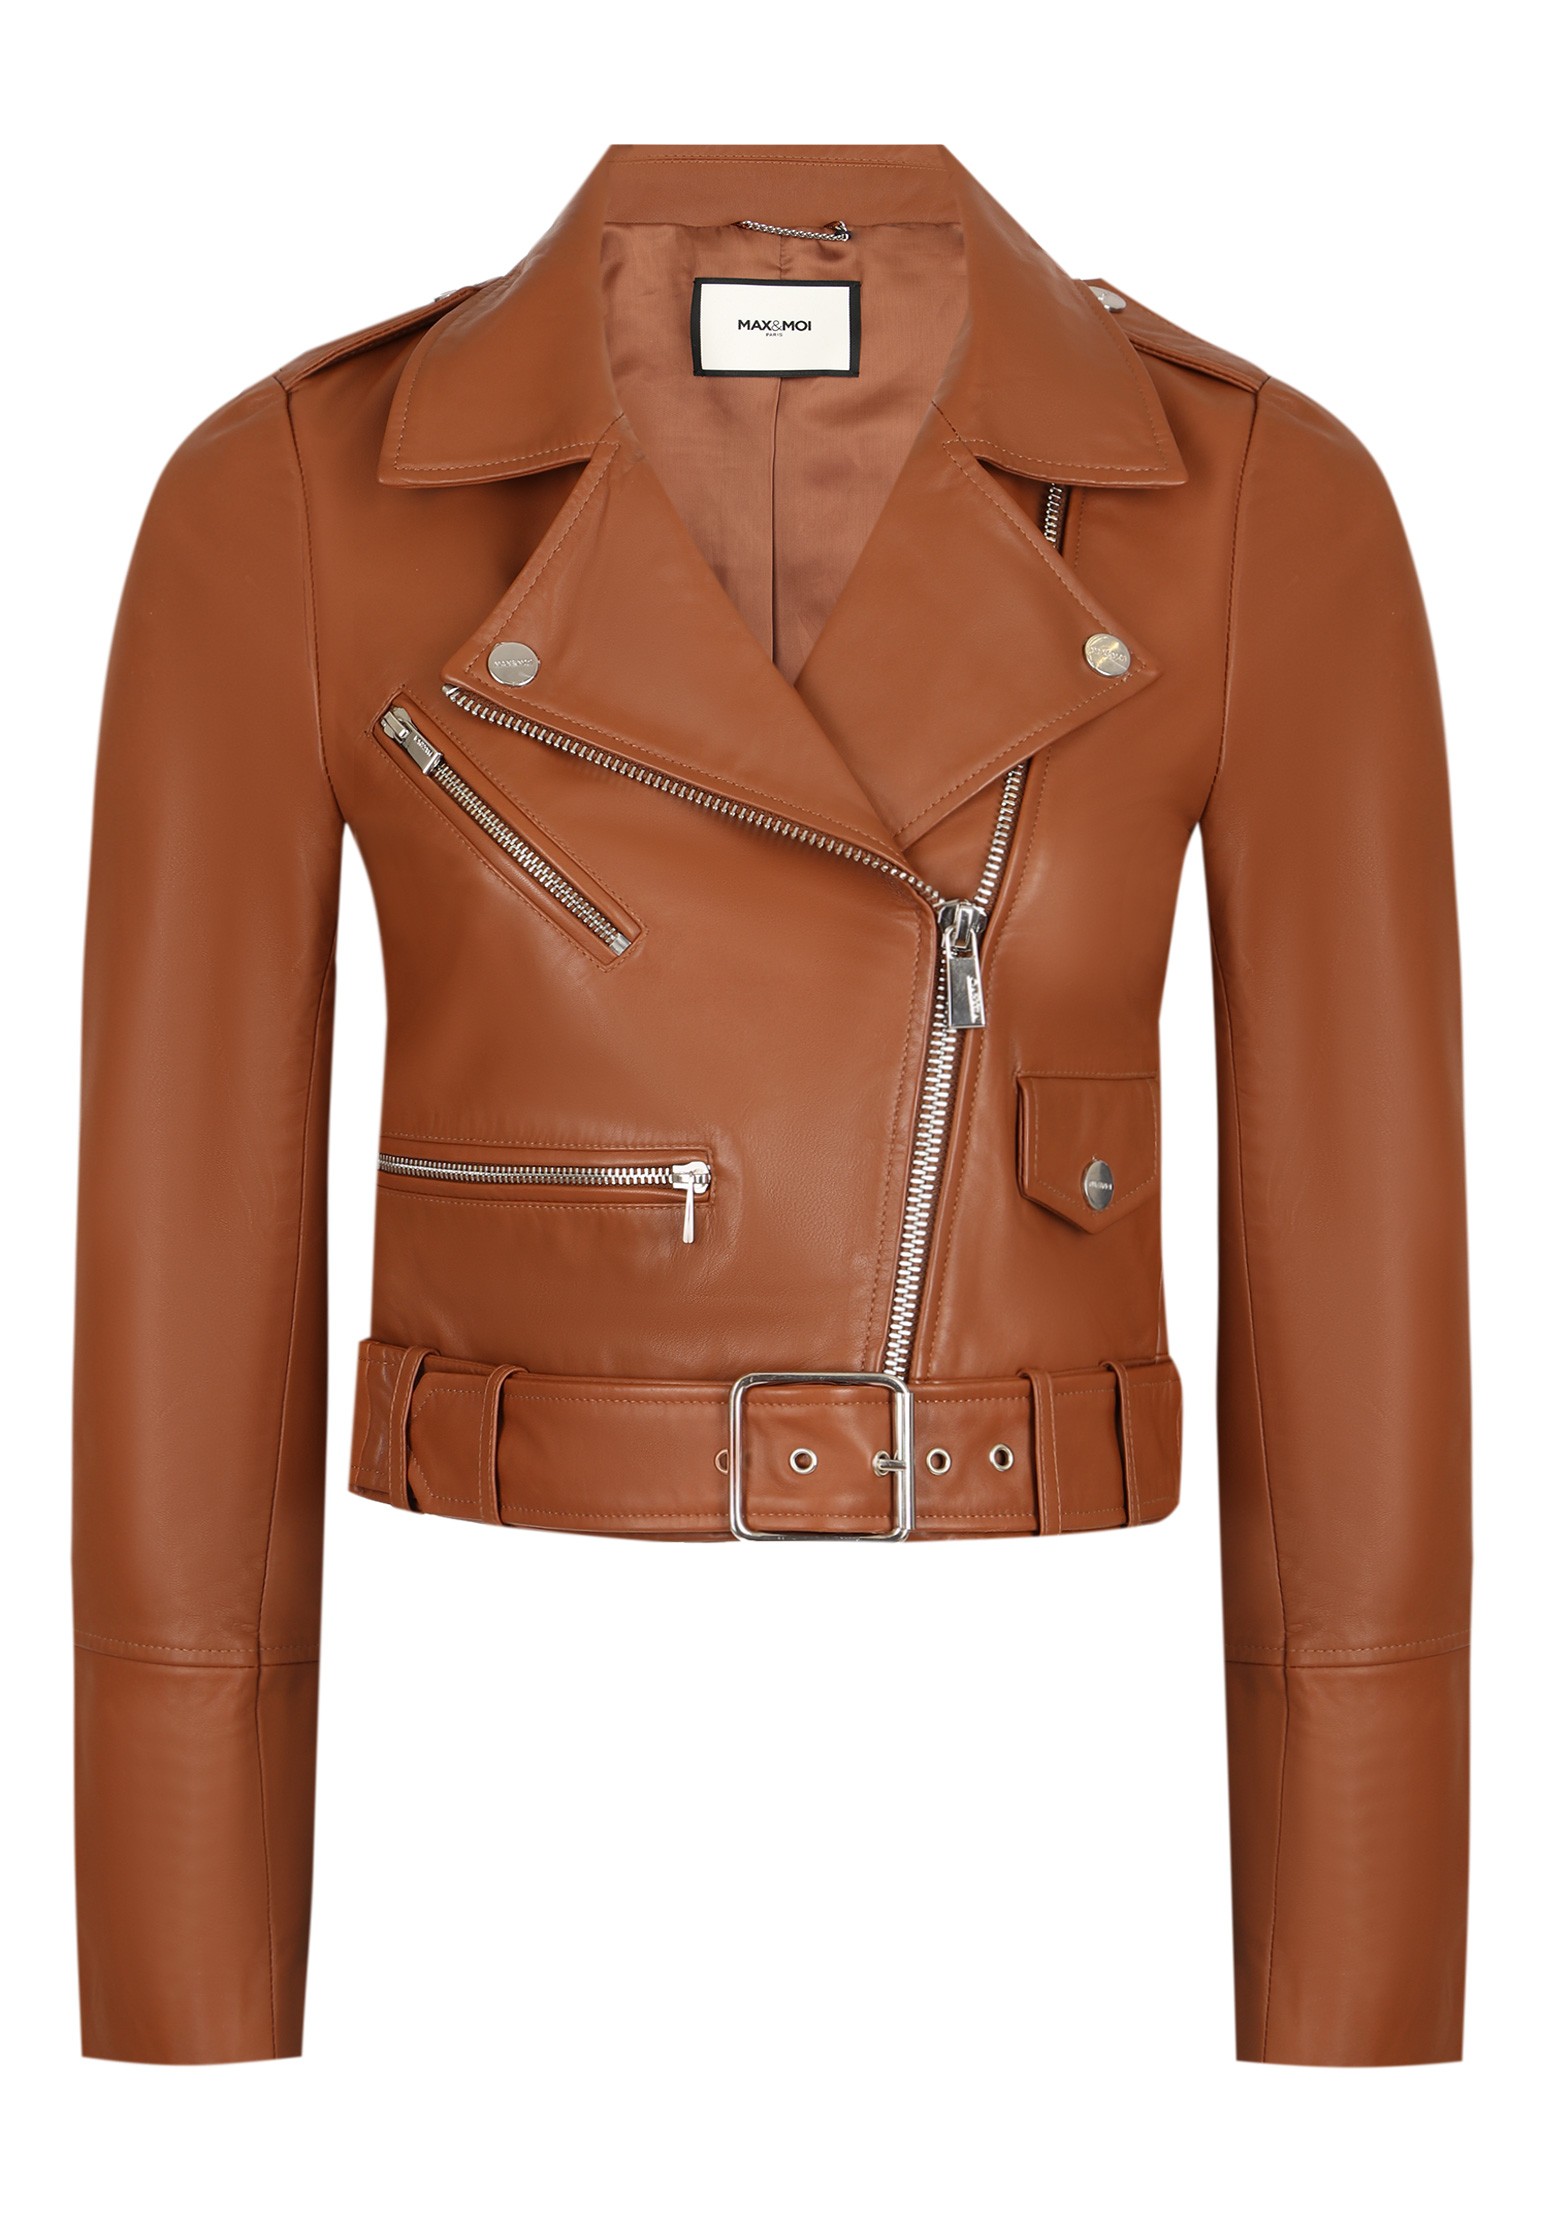 Кожаная куртка женская MAX & MOI 128063 коричневая 38 FR